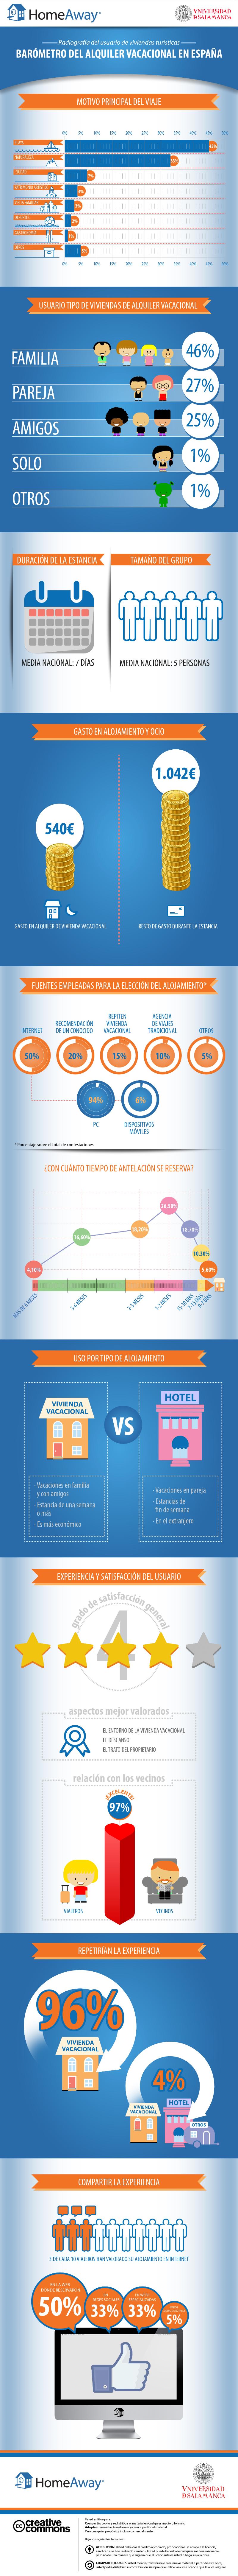 Alquiler-vacacional-2014-infografia